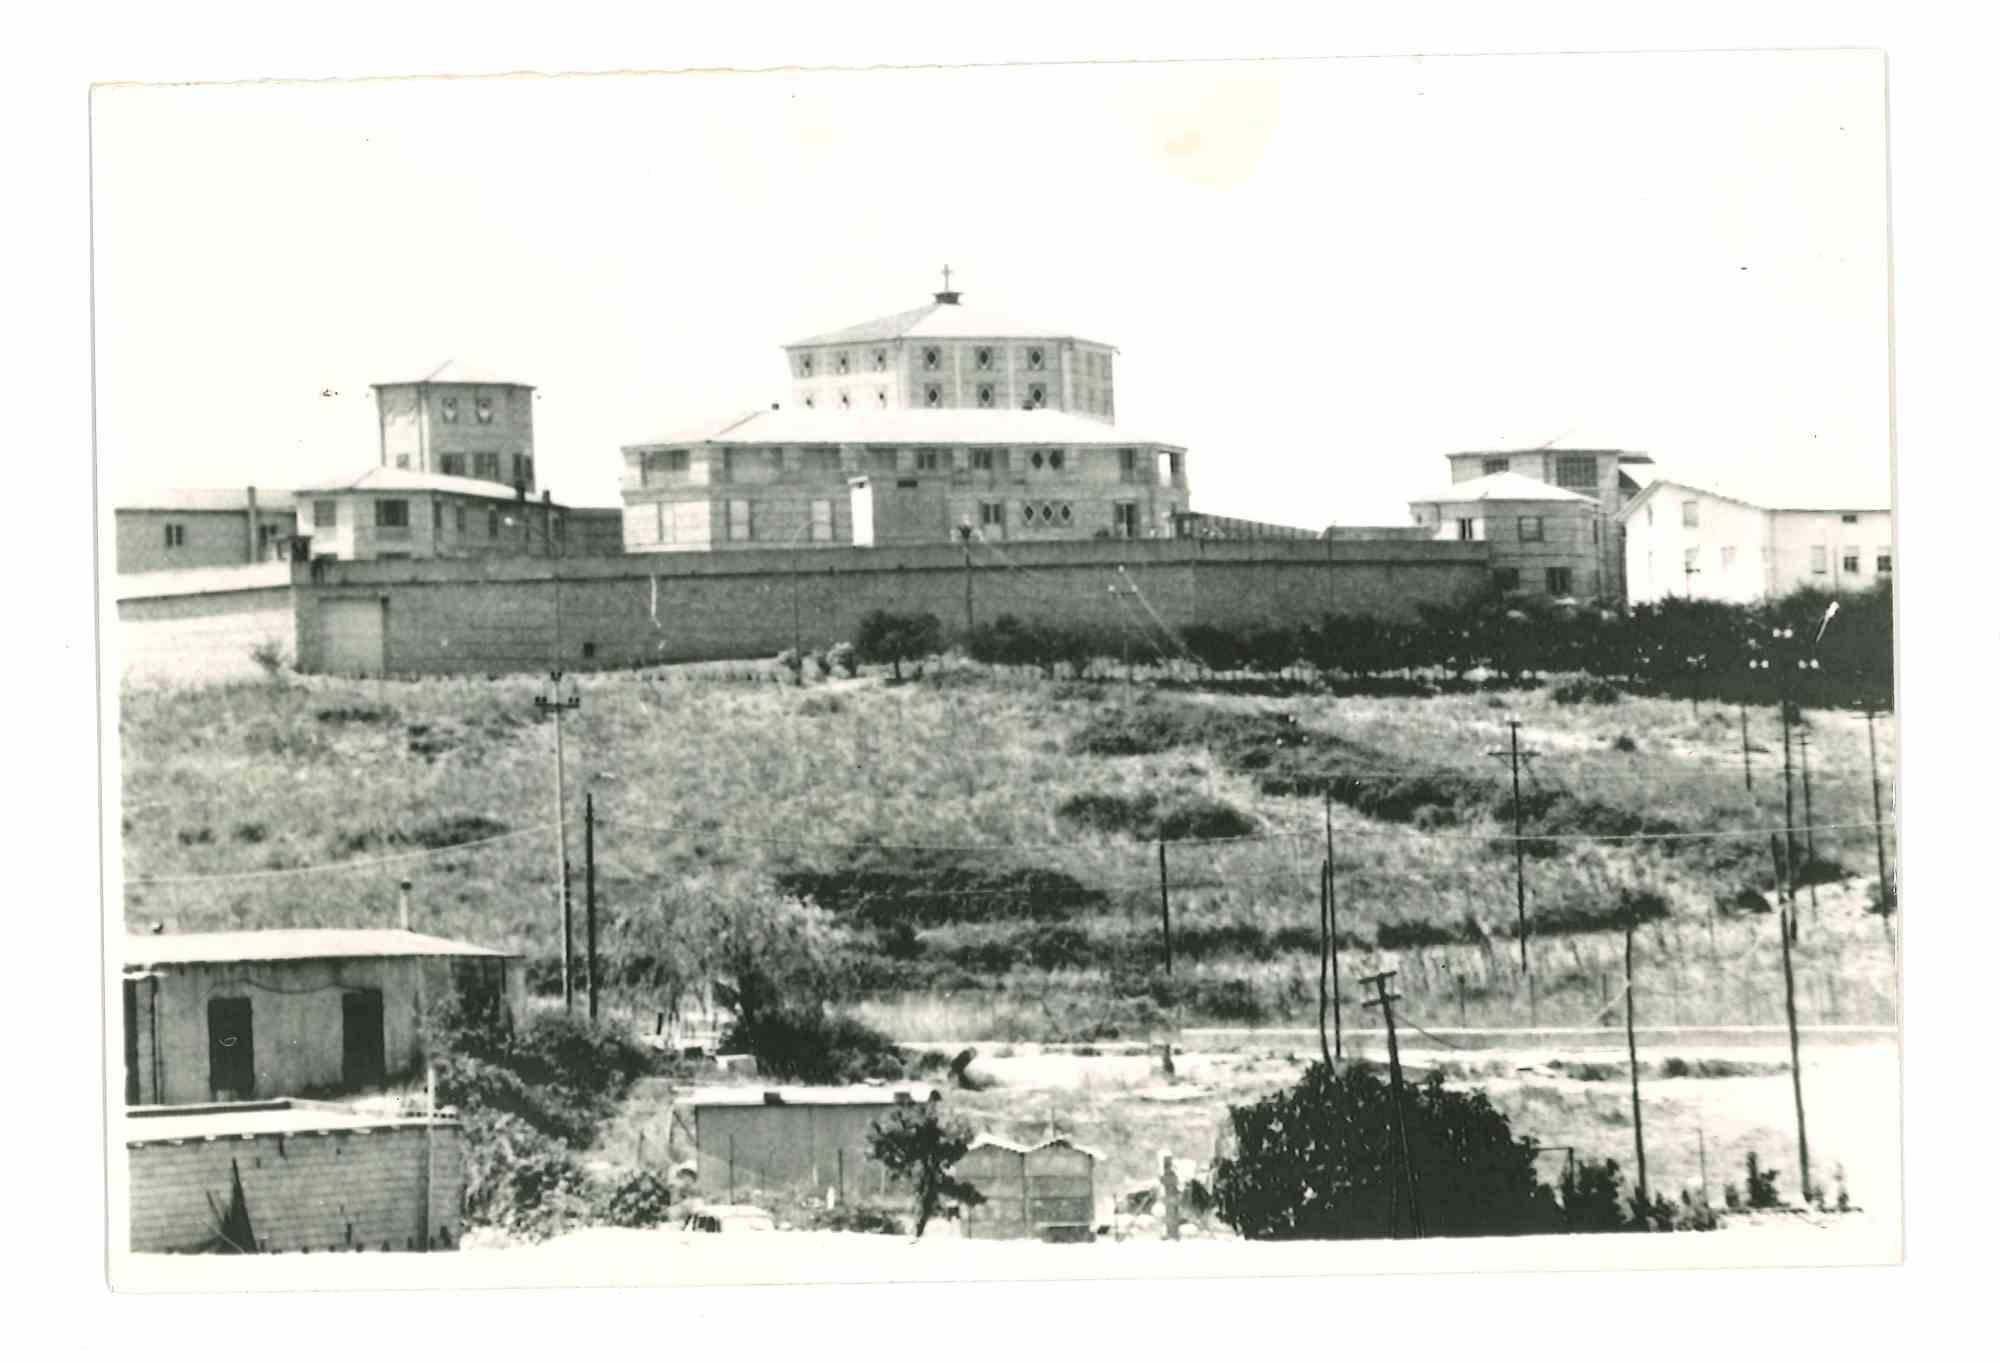 Unknown Portrait Photograph - Historical Photo of Prison  - Badu 'e Carros - 1970s